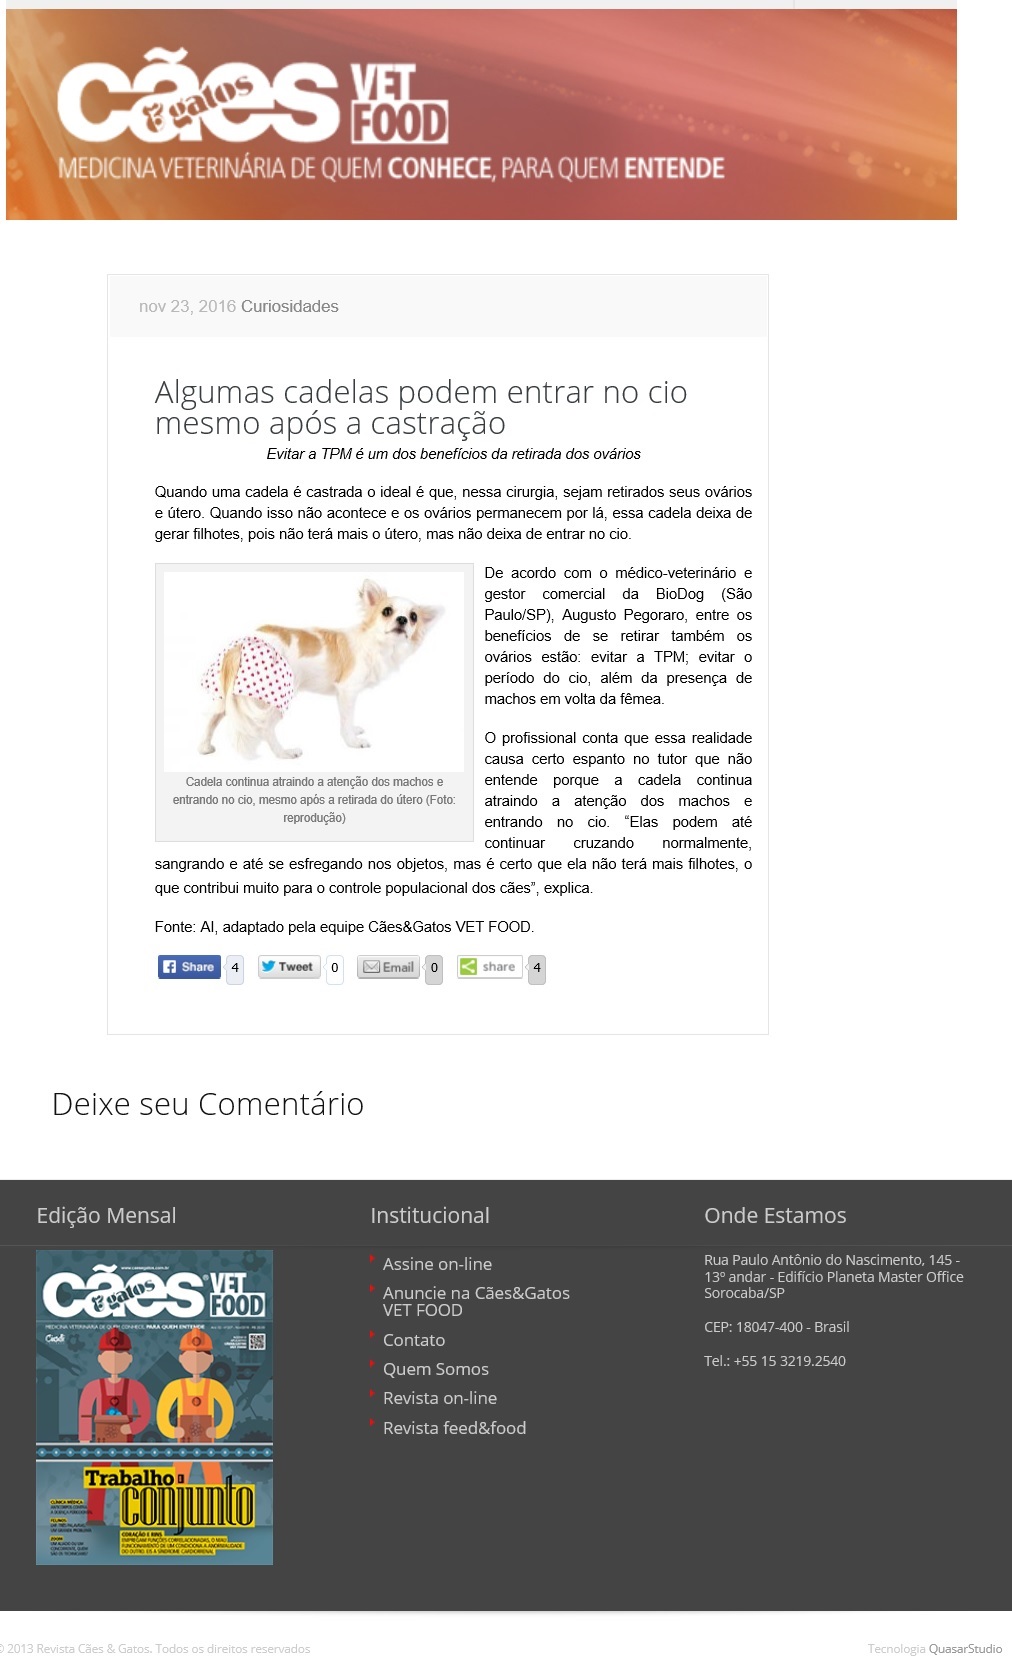 biodog-na-revista-caes-e-gatos-on-line_23-11-2016